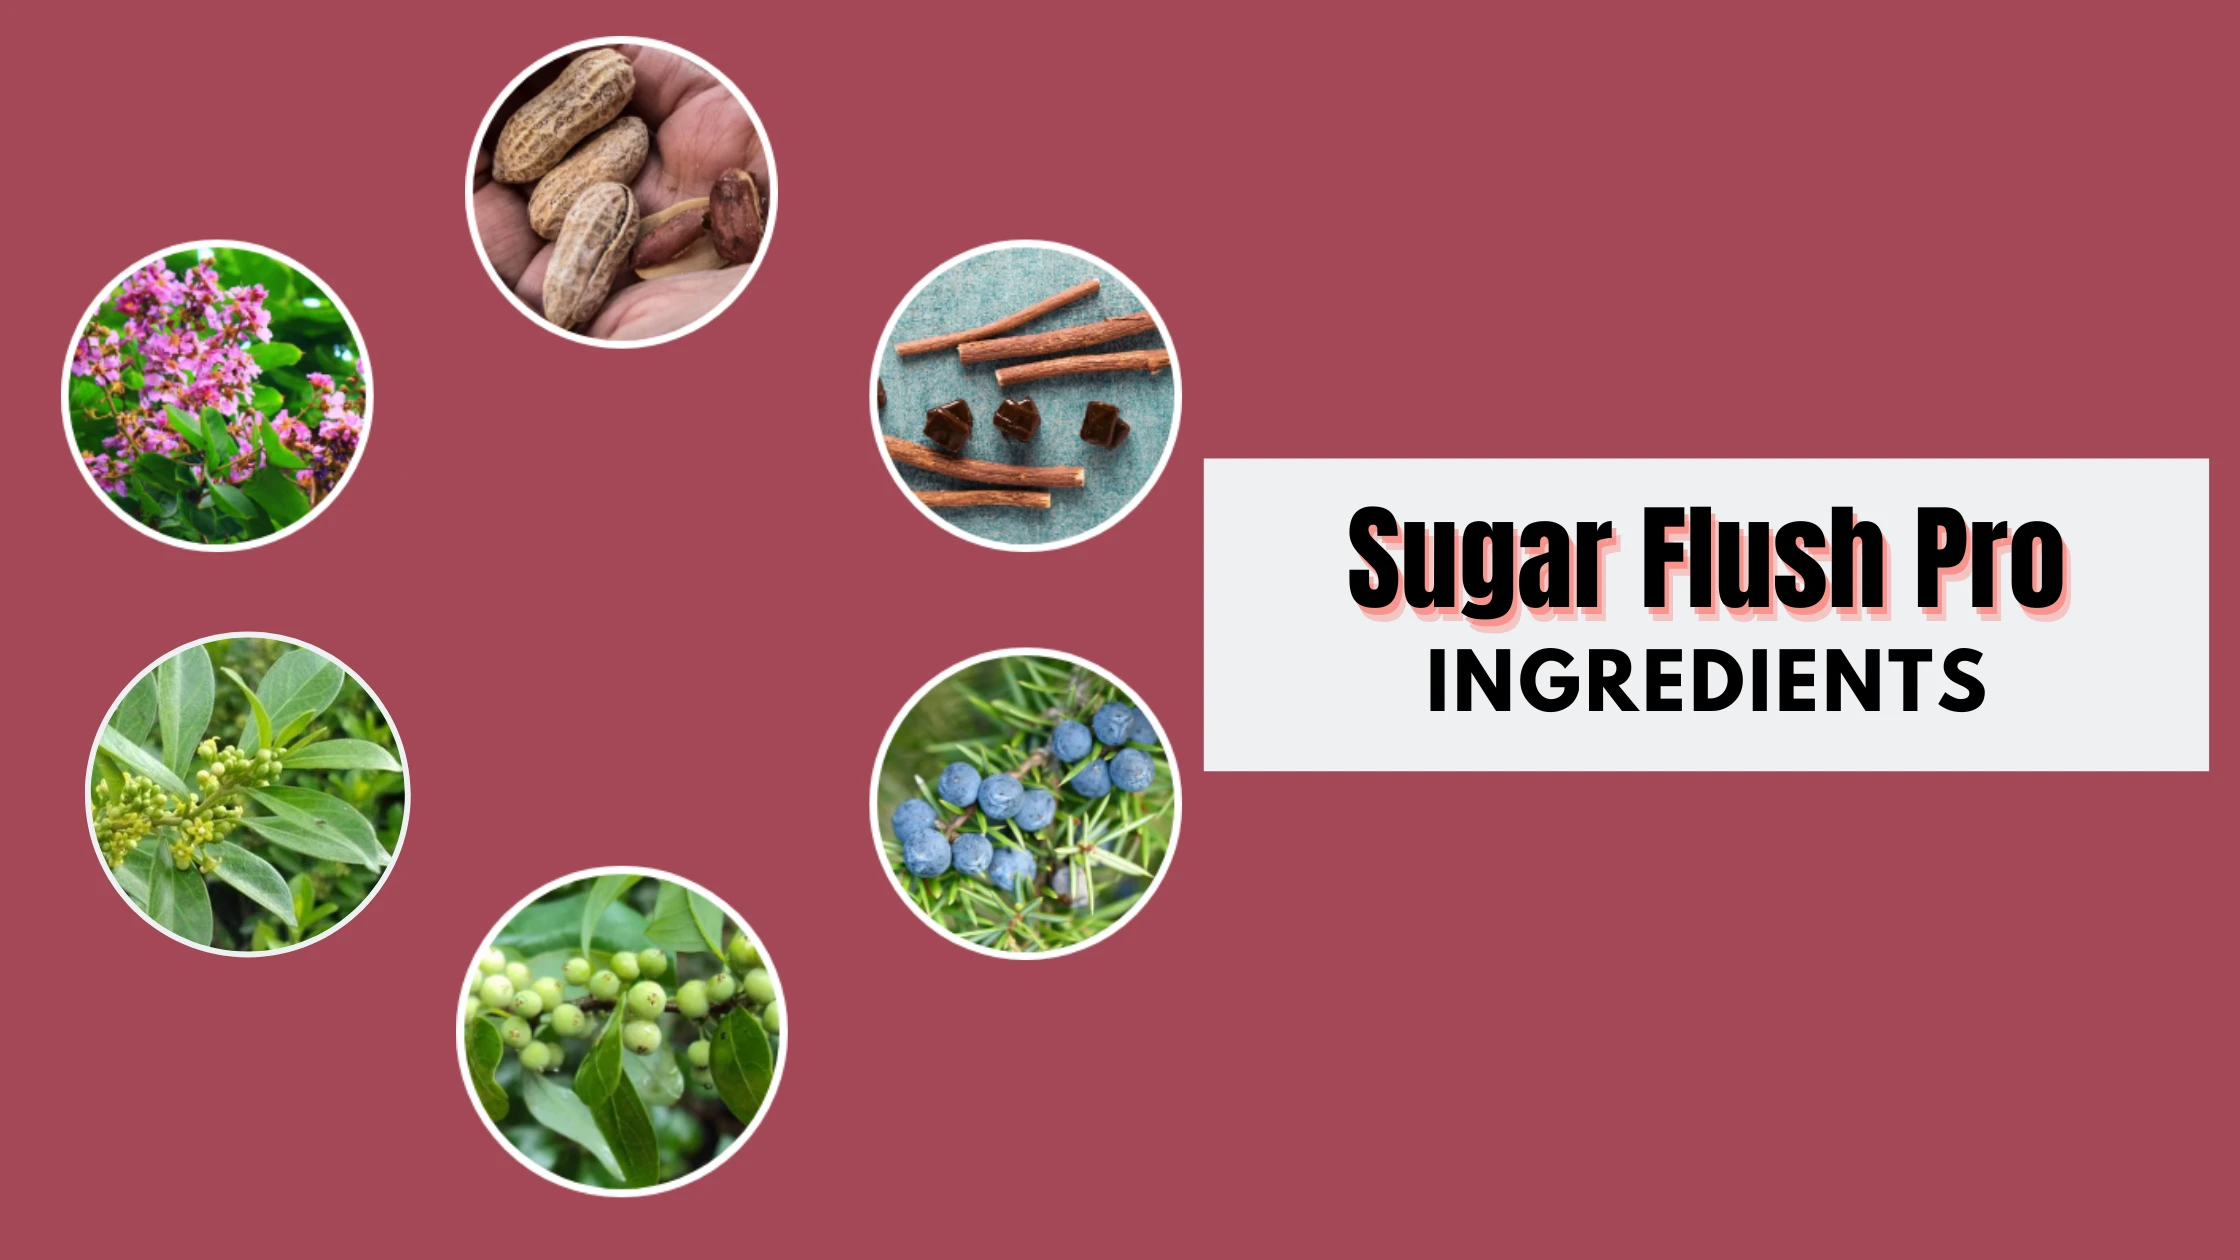 Sugar Flush Pro ingredients